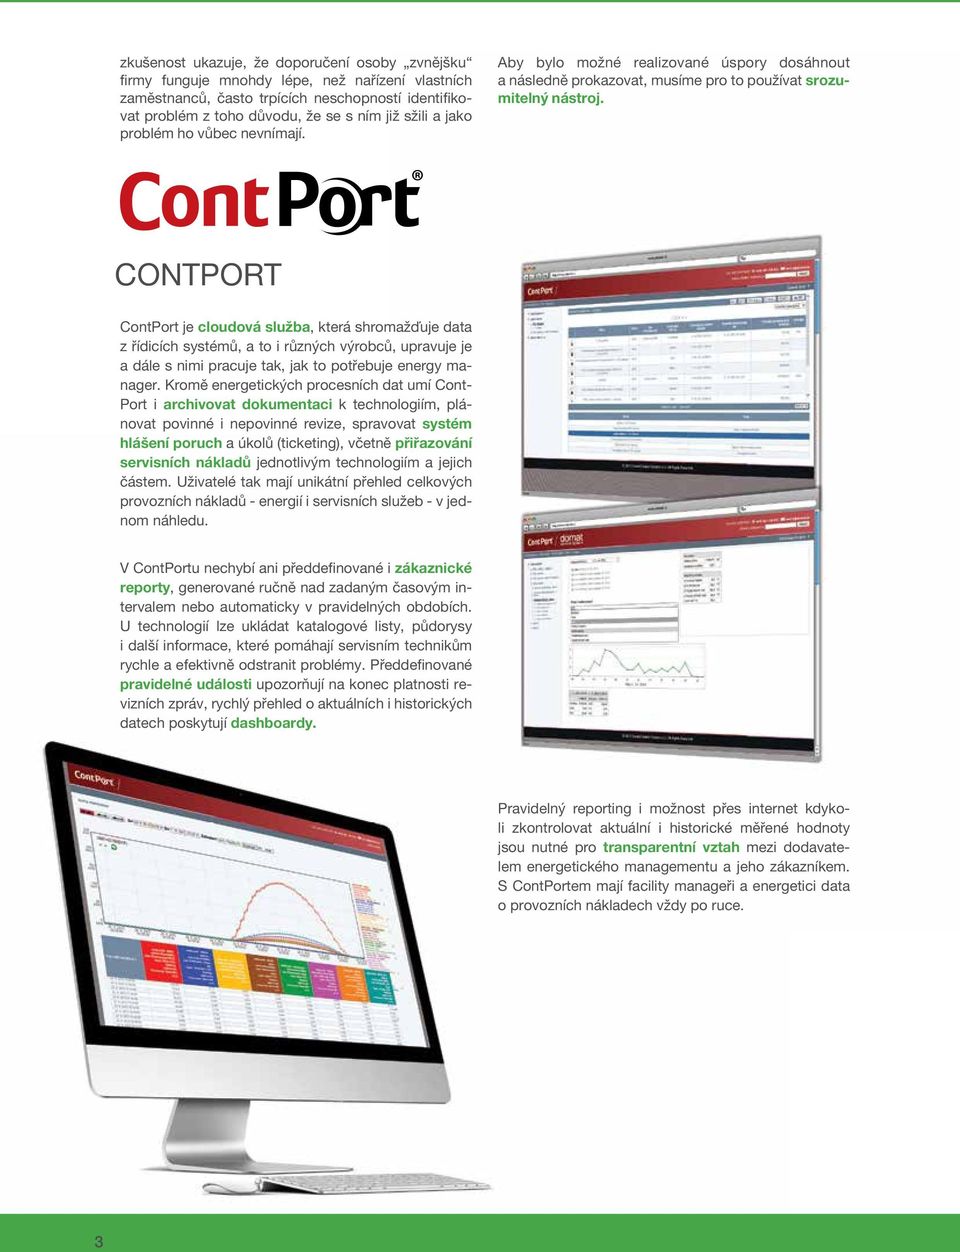 CONTPORT ContPort je cloudová služba, která shromažďuje data z řídicích systémů, a to i různých výrobců, upravuje je a dále s nimi pracuje tak, jak to potřebuje energy manager.